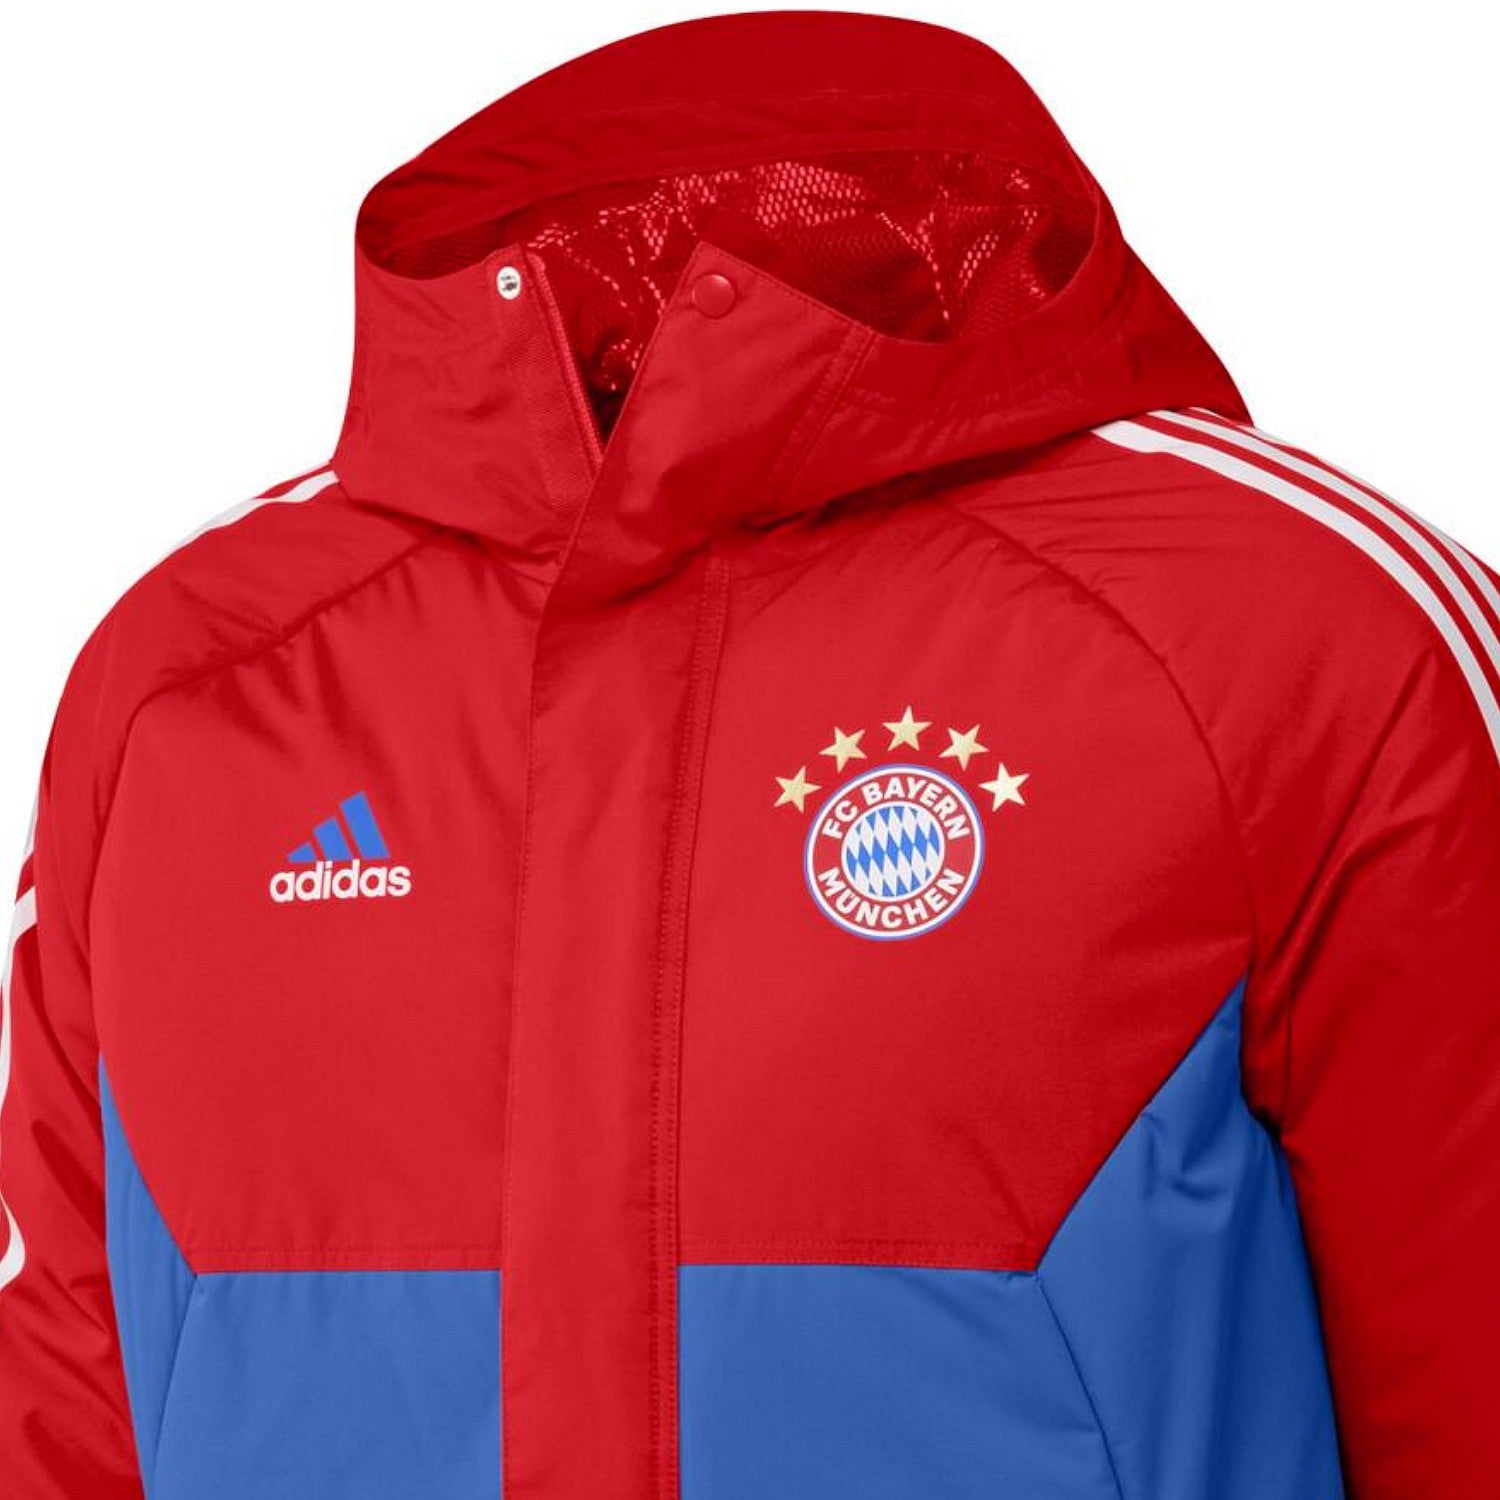 Vriend levering Doe herleven Bayern Munich Soccer parka down jacket 2023 red/blue - Adidas –  SoccerTracksuits.com